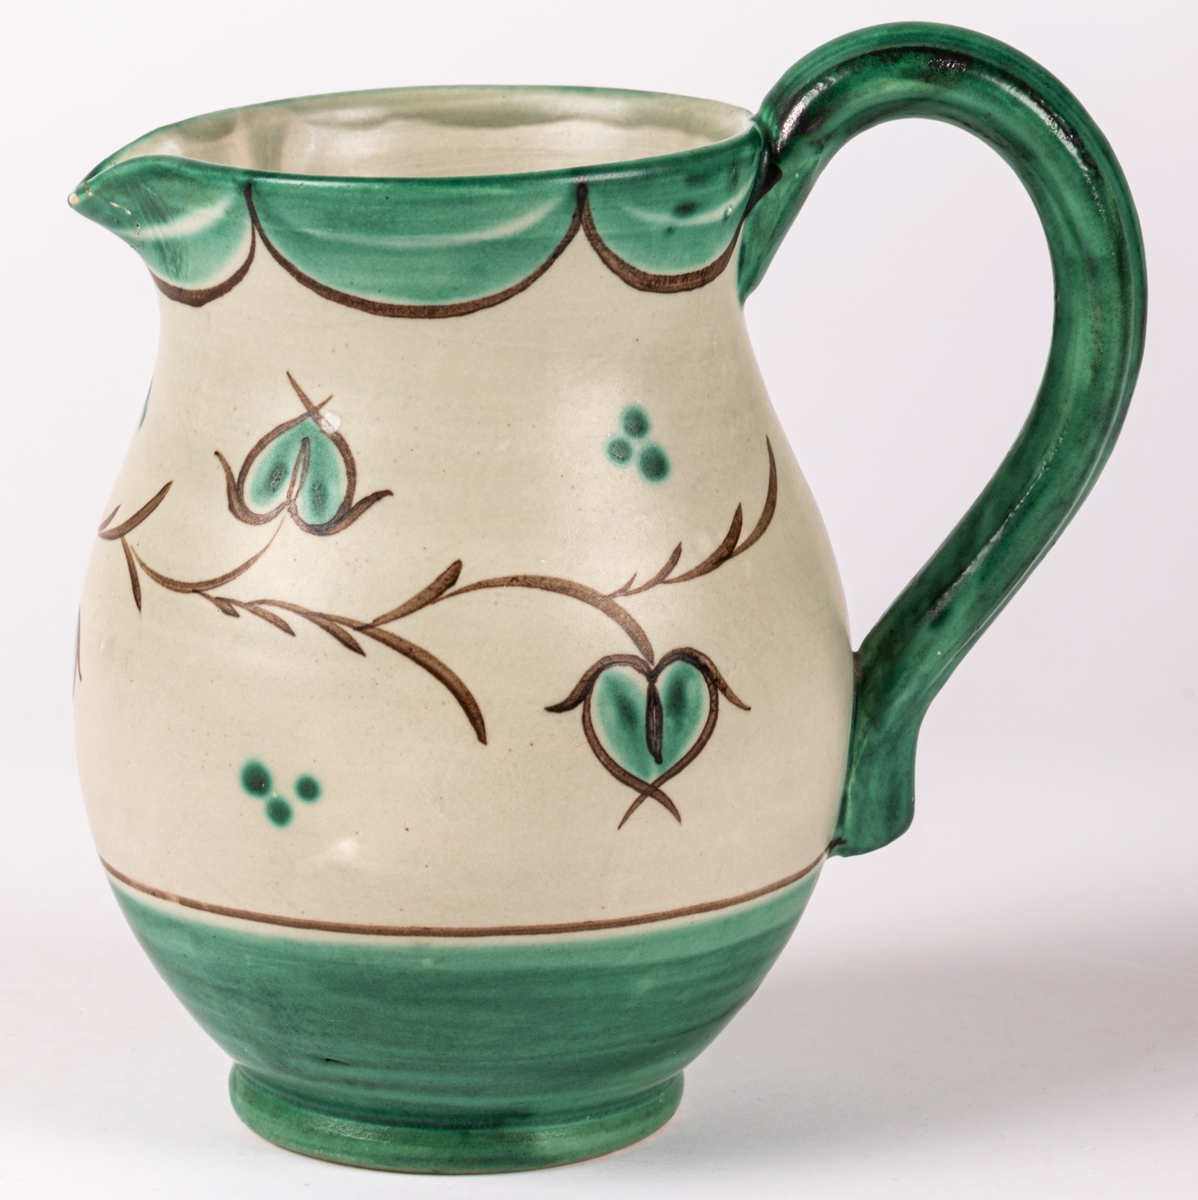 Tillbringare med hänkel i lergods från Bo Fajans, rymmer 3,5 dl. Formen skapad 1925 av konstnär Eva Jancke-Björk. Denna dekor/glasyr VA - grågrön matt glasyr med grön och brun dekor - producerades mellan 1935-43. Pipen limmad.